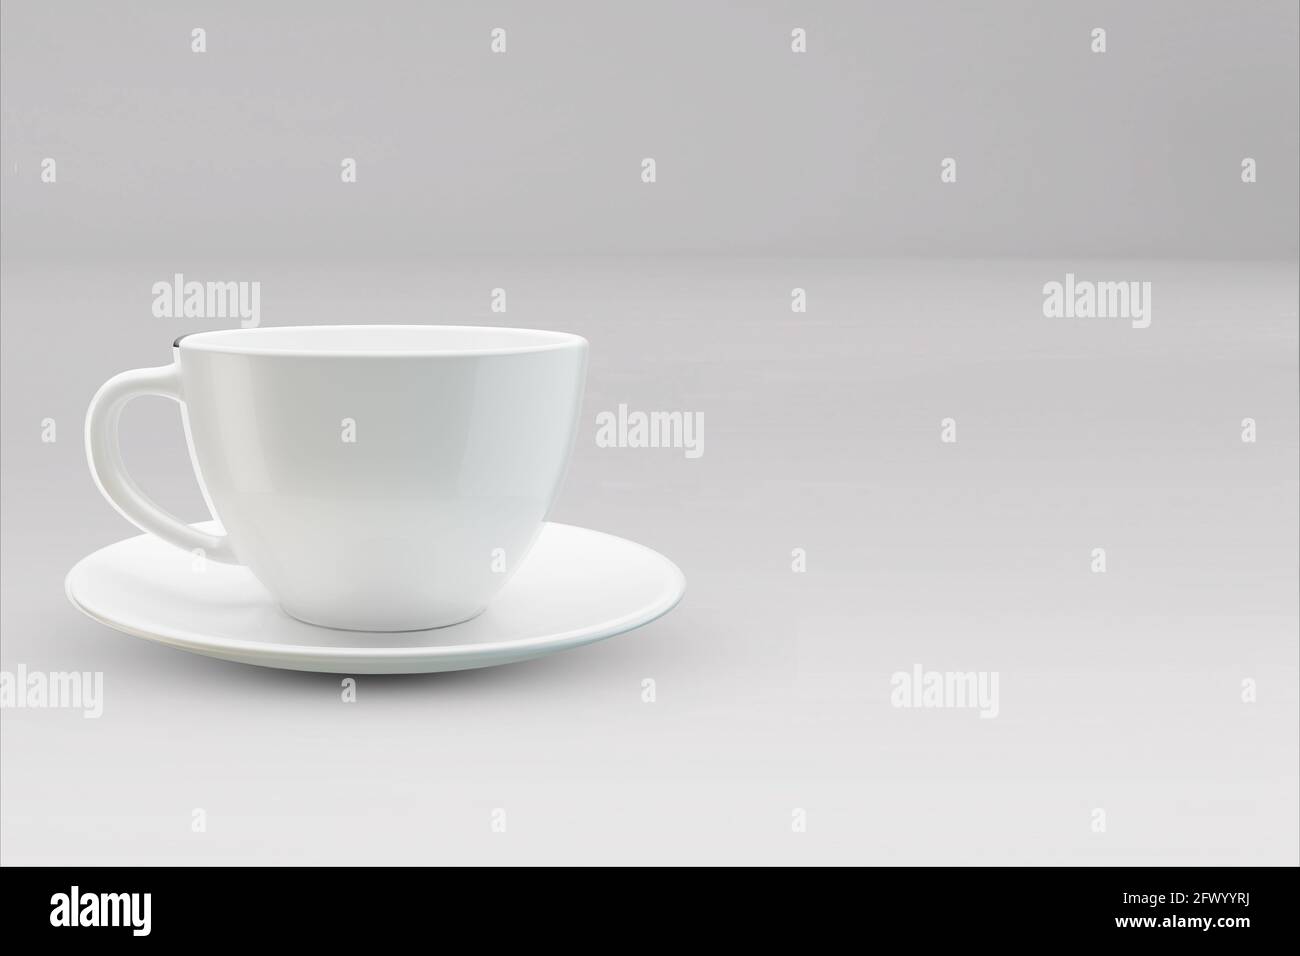 Tazze realistiche per caffè o tazza da tè con manico. Tazza di porcellana per tè o caffè modello mockup isolato. Teacup realistico per colazione, illu 3D Foto Stock